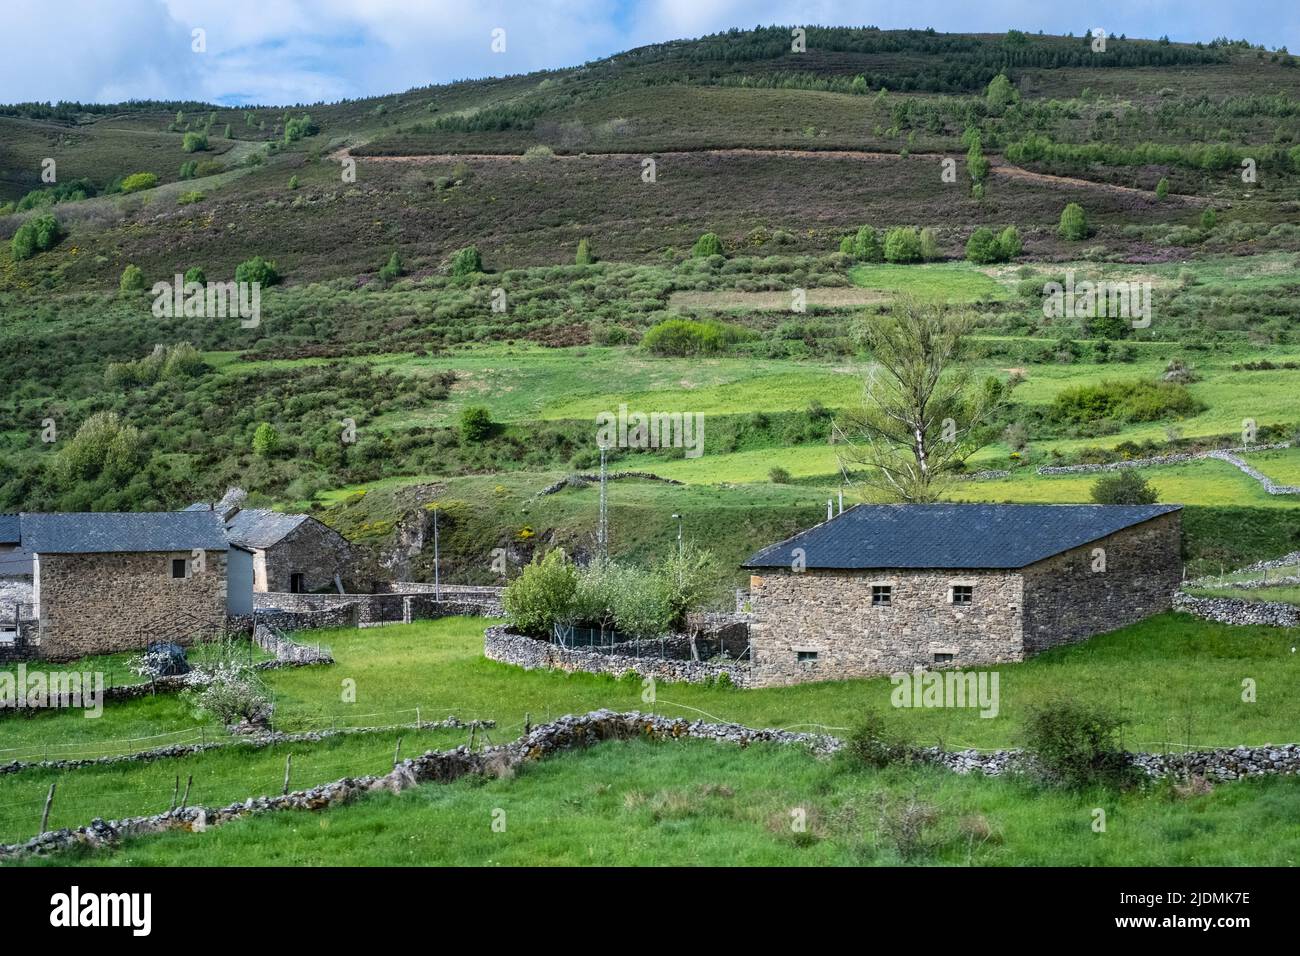 Espagne, Asturies. Maisons rurales en pierre près du Parc naturel de Somiedo. Banque D'Images